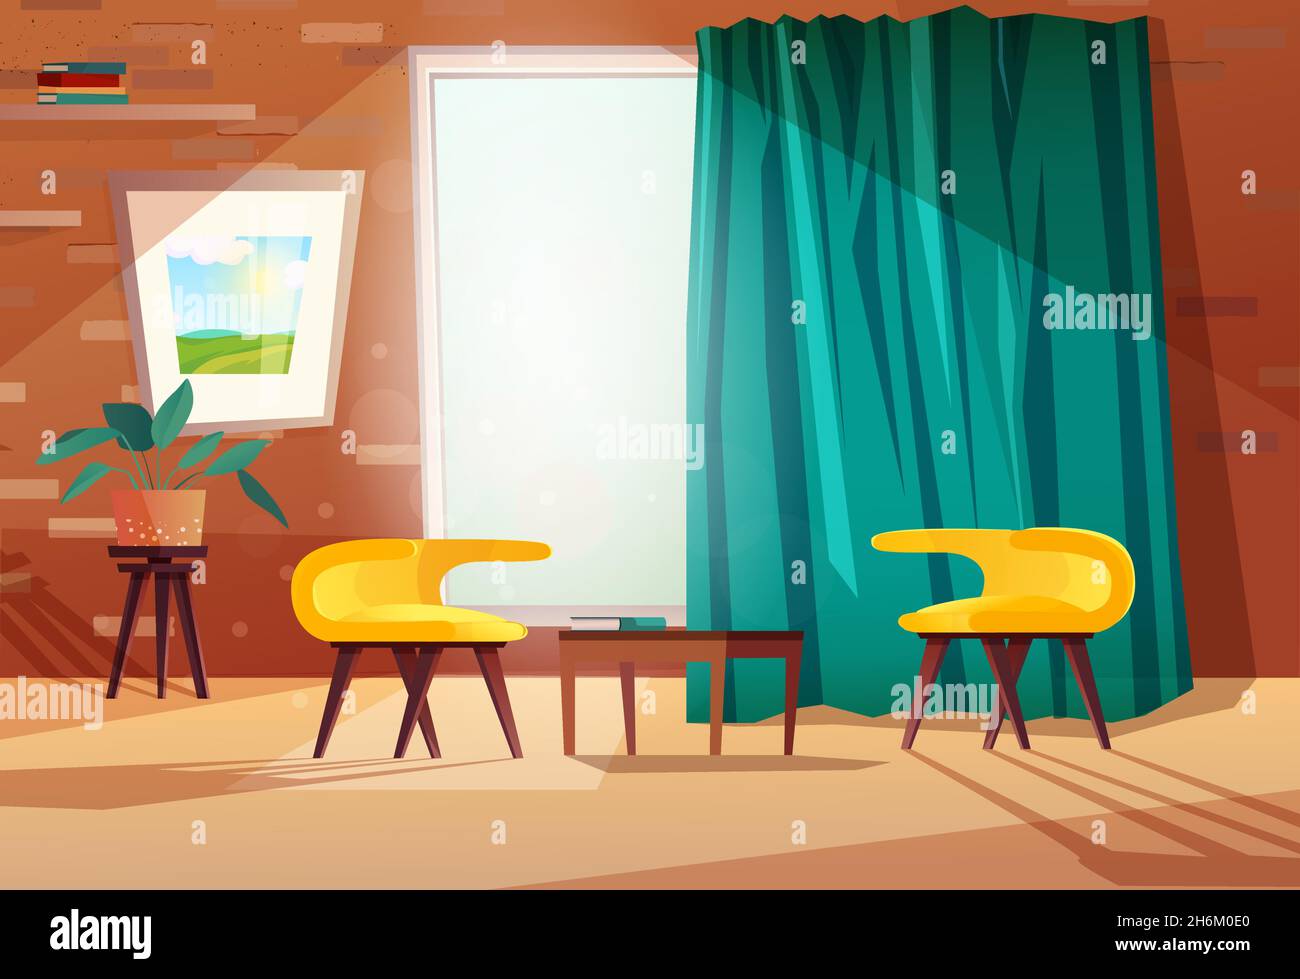 Salon intérieur de dessin animé avec fauteuils, table, image sur le mur, une fenêtre et un rideau.Mur de briques avec étagères. Illustration de Vecteur